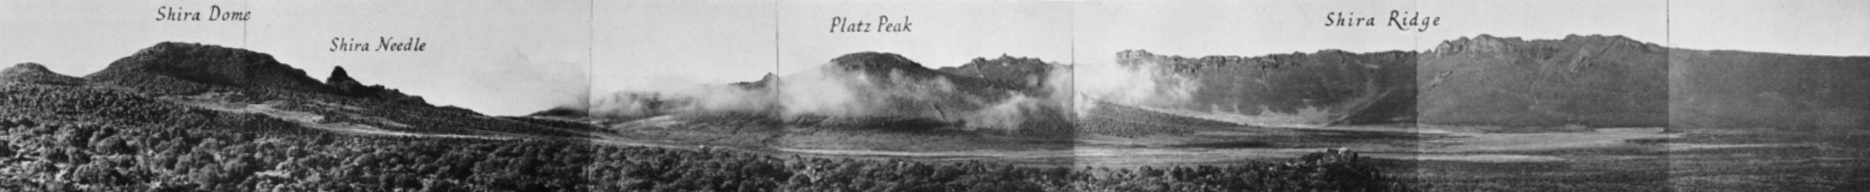 Das Shira Platau 1948.Mit dem zentralem Platzkegel - hier als Platz Peak bezeichnet. Ein Panoramabild aus Einzelaufnahmen von Georg Salt aus dem jahr 1948. [5]